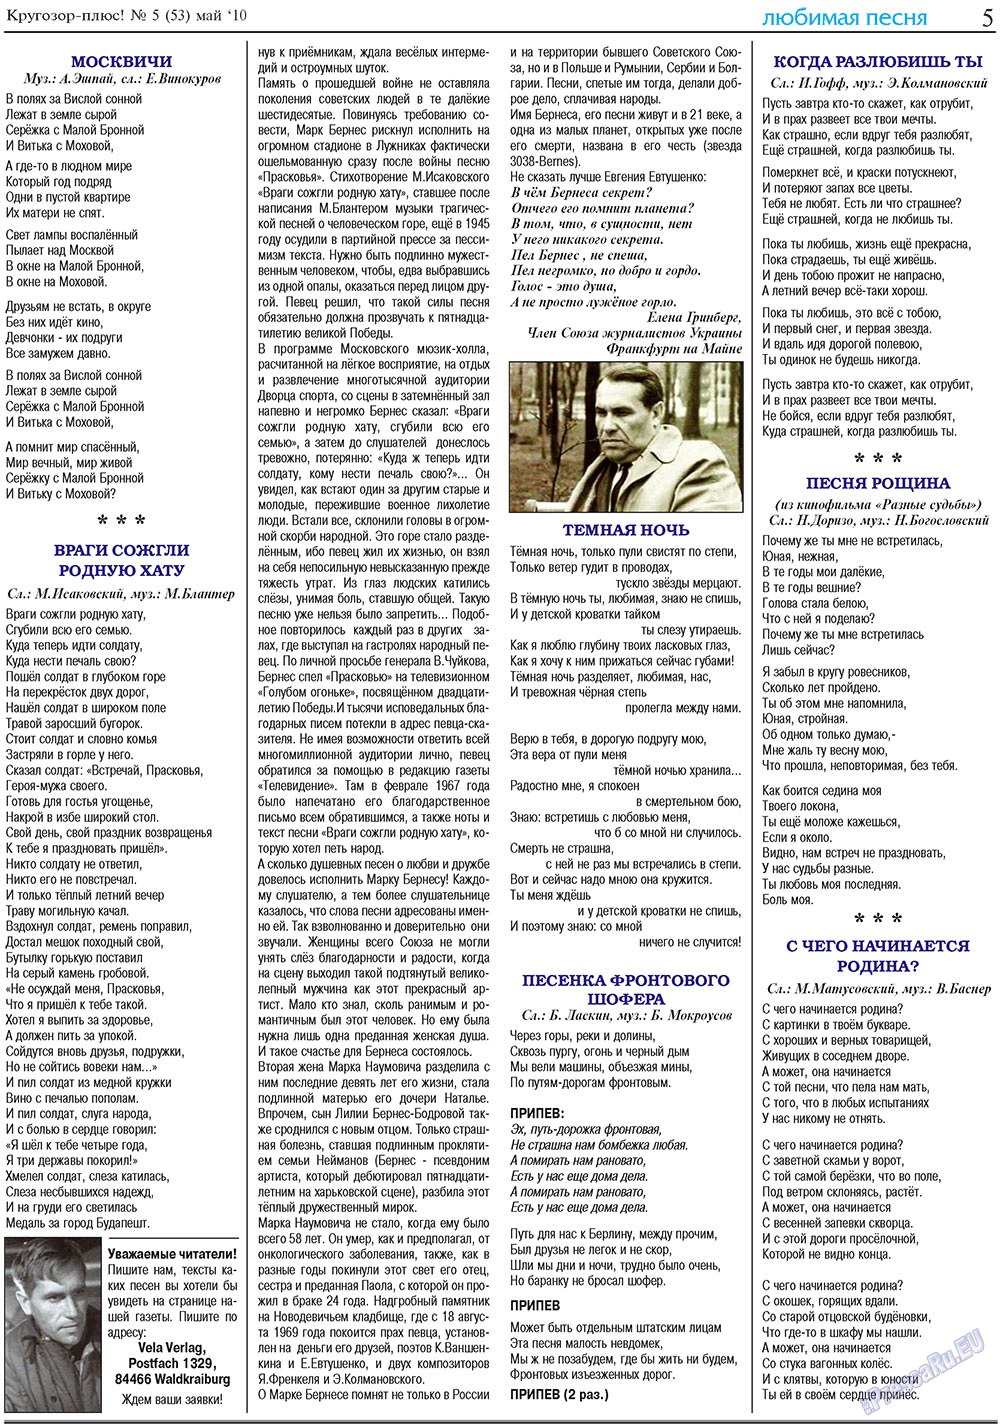 Кругозор плюс!, газета. 2010 №5 стр.21